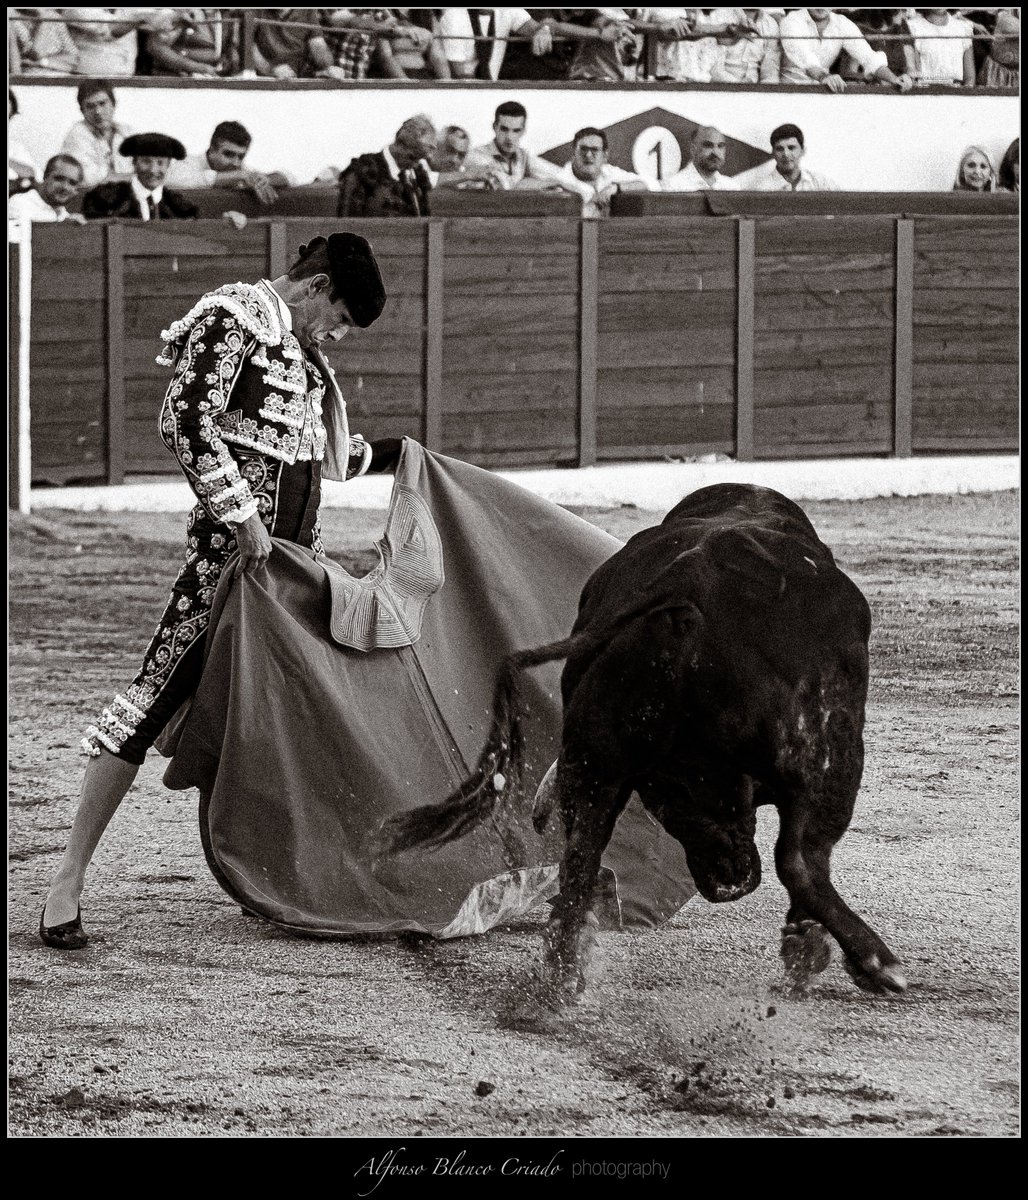 Puro terciopelo @JMManzanares 

#Remedios22 #ColmenarViejo #detalles #toros #taurimaquia #vintage #blancoynegro #fotografíataurina